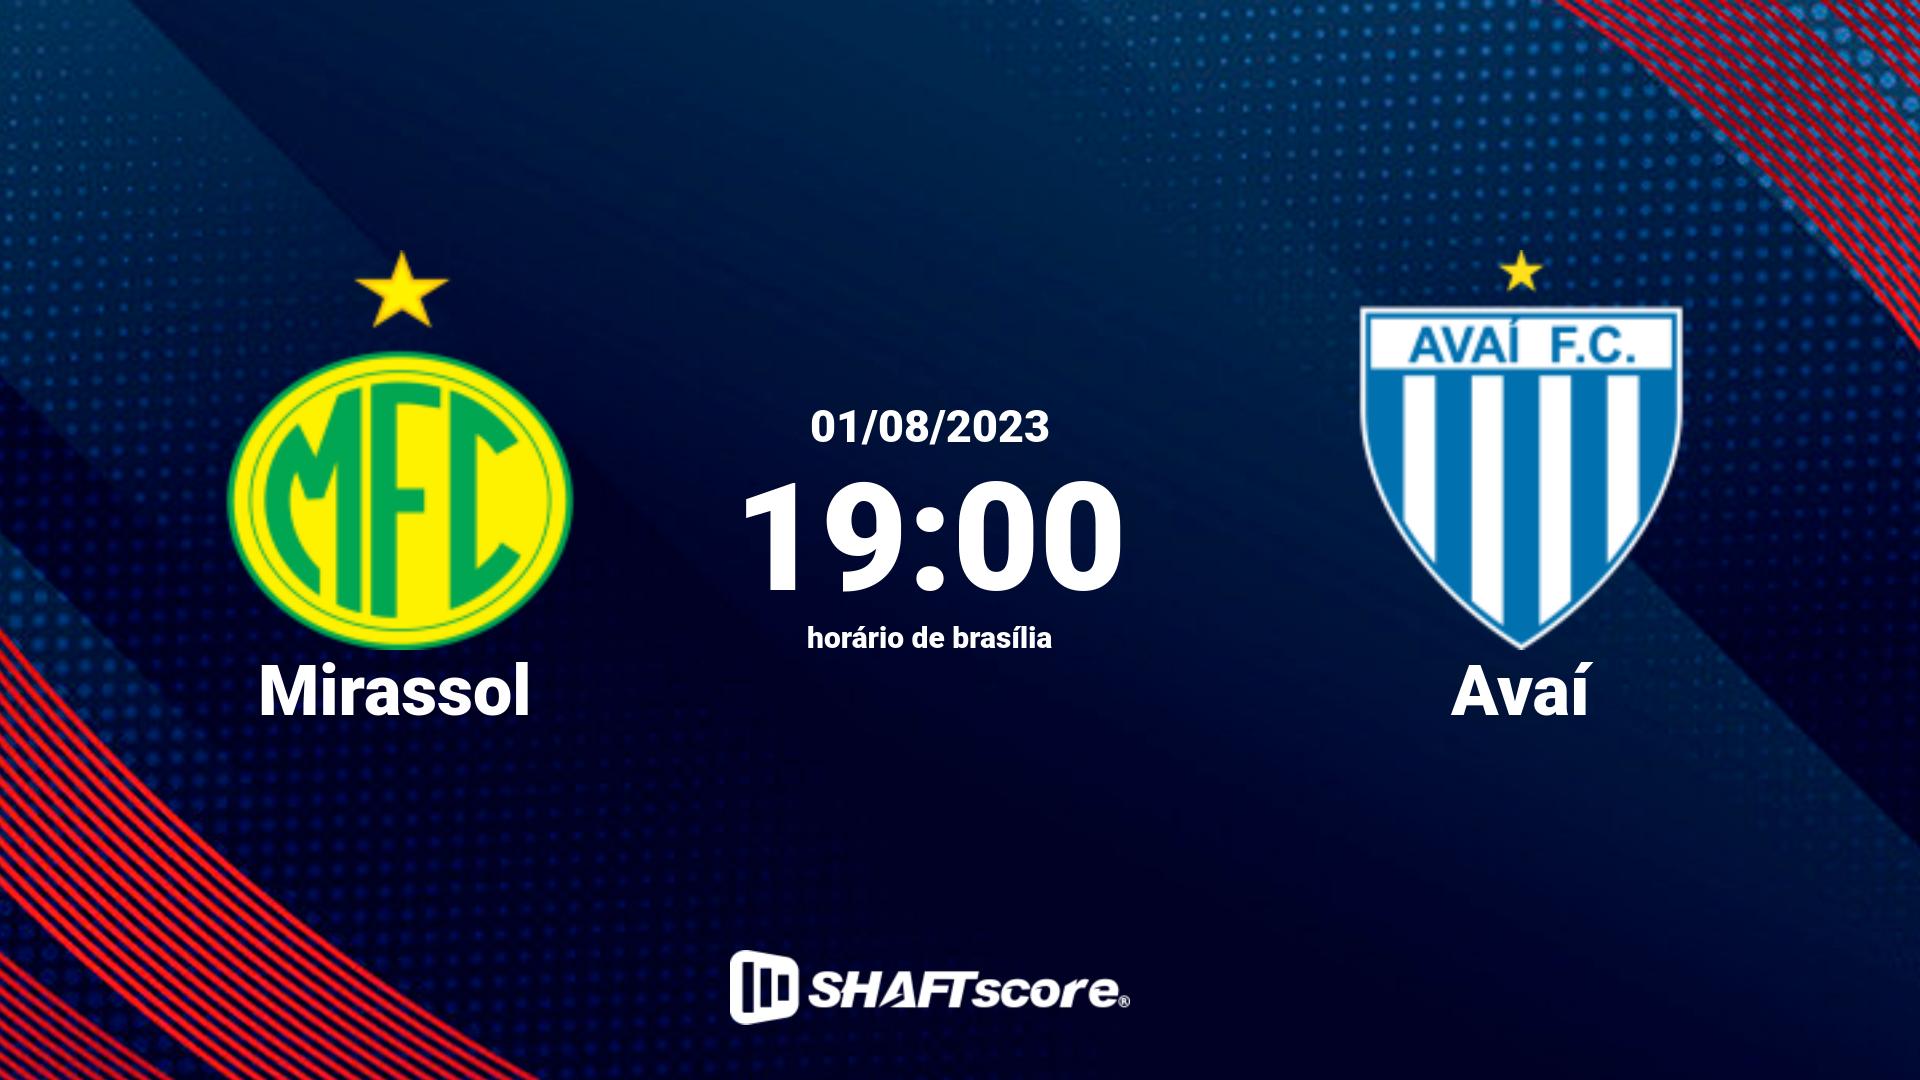 Estatísticas do jogo Mirassol vs Avaí 01.08 19:00